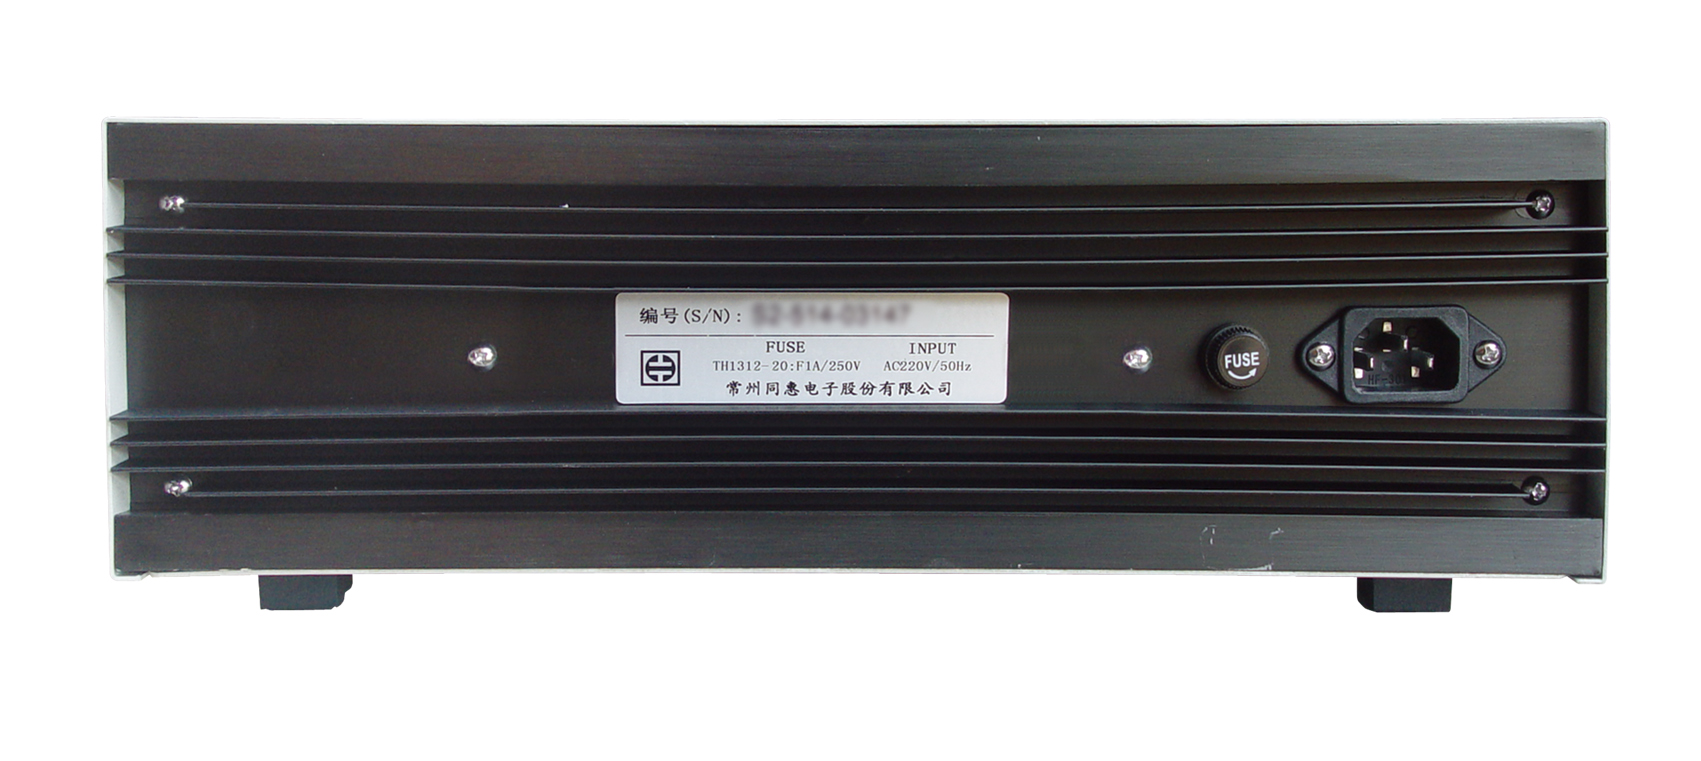 供应四川TH1312-20音频扫频信号发生器销售、价格、批发、哪家好、热线电话图片